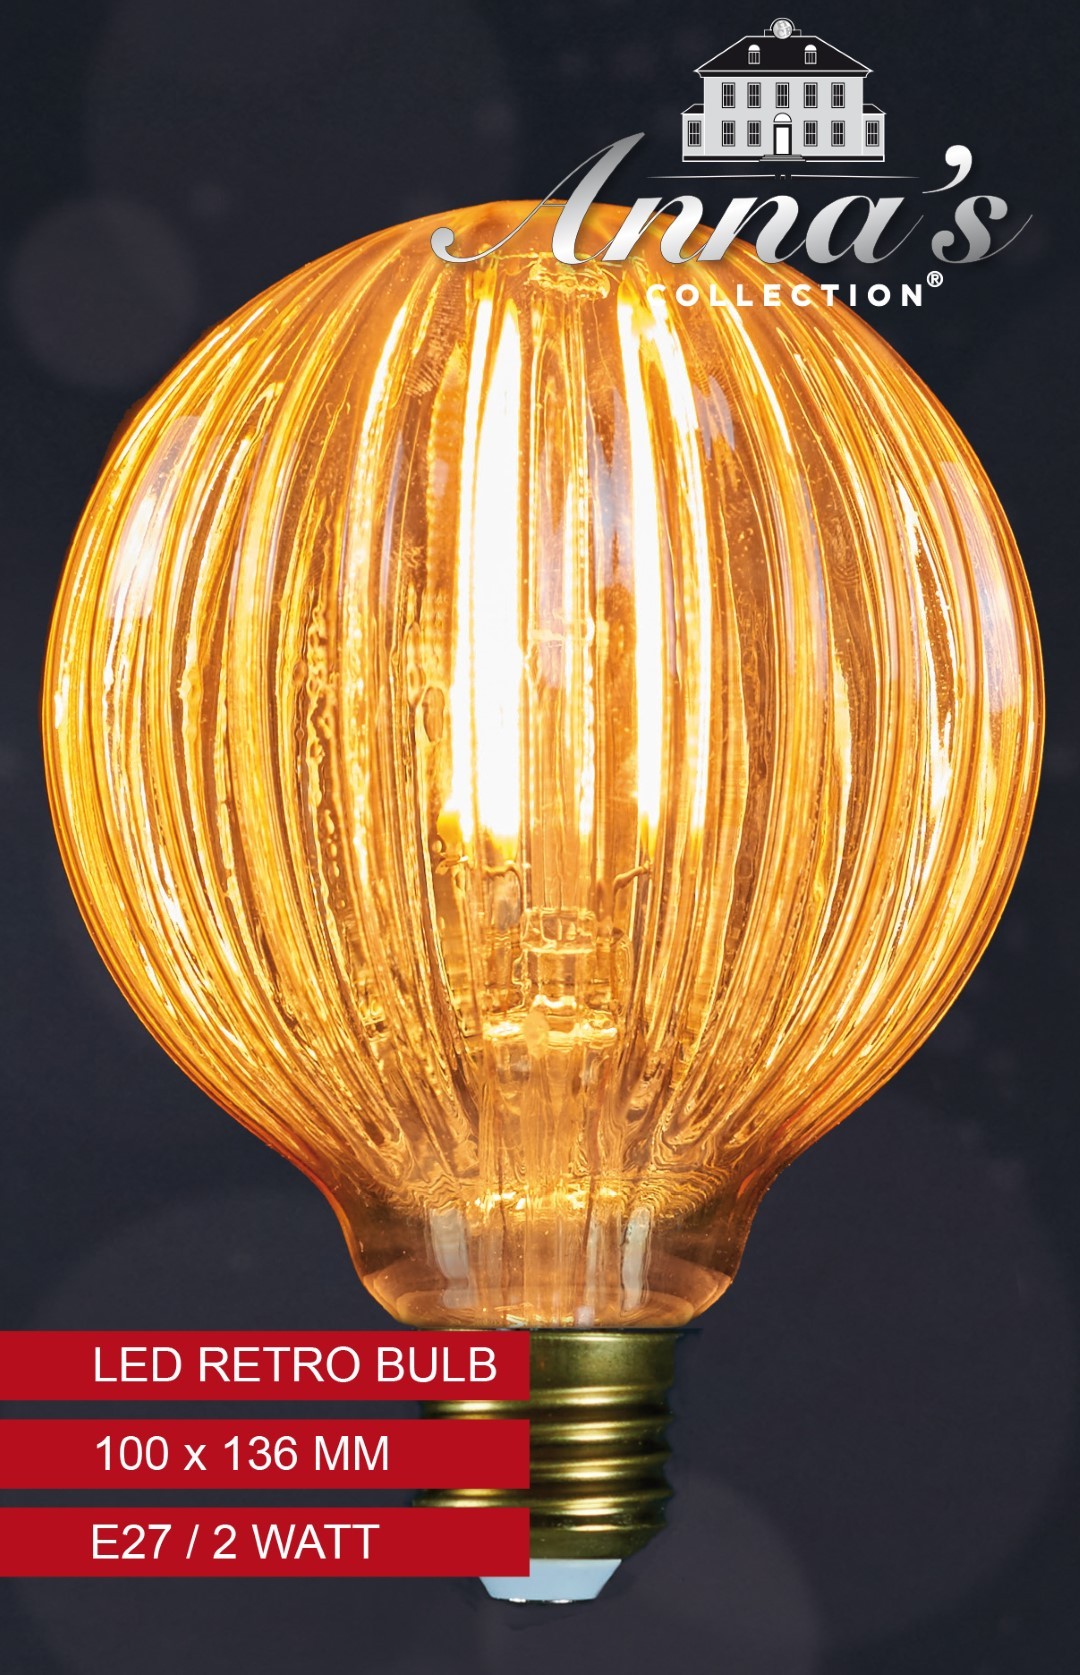 Led retro lamp pompoen 100x136mm 2w/e27 Anna's collection